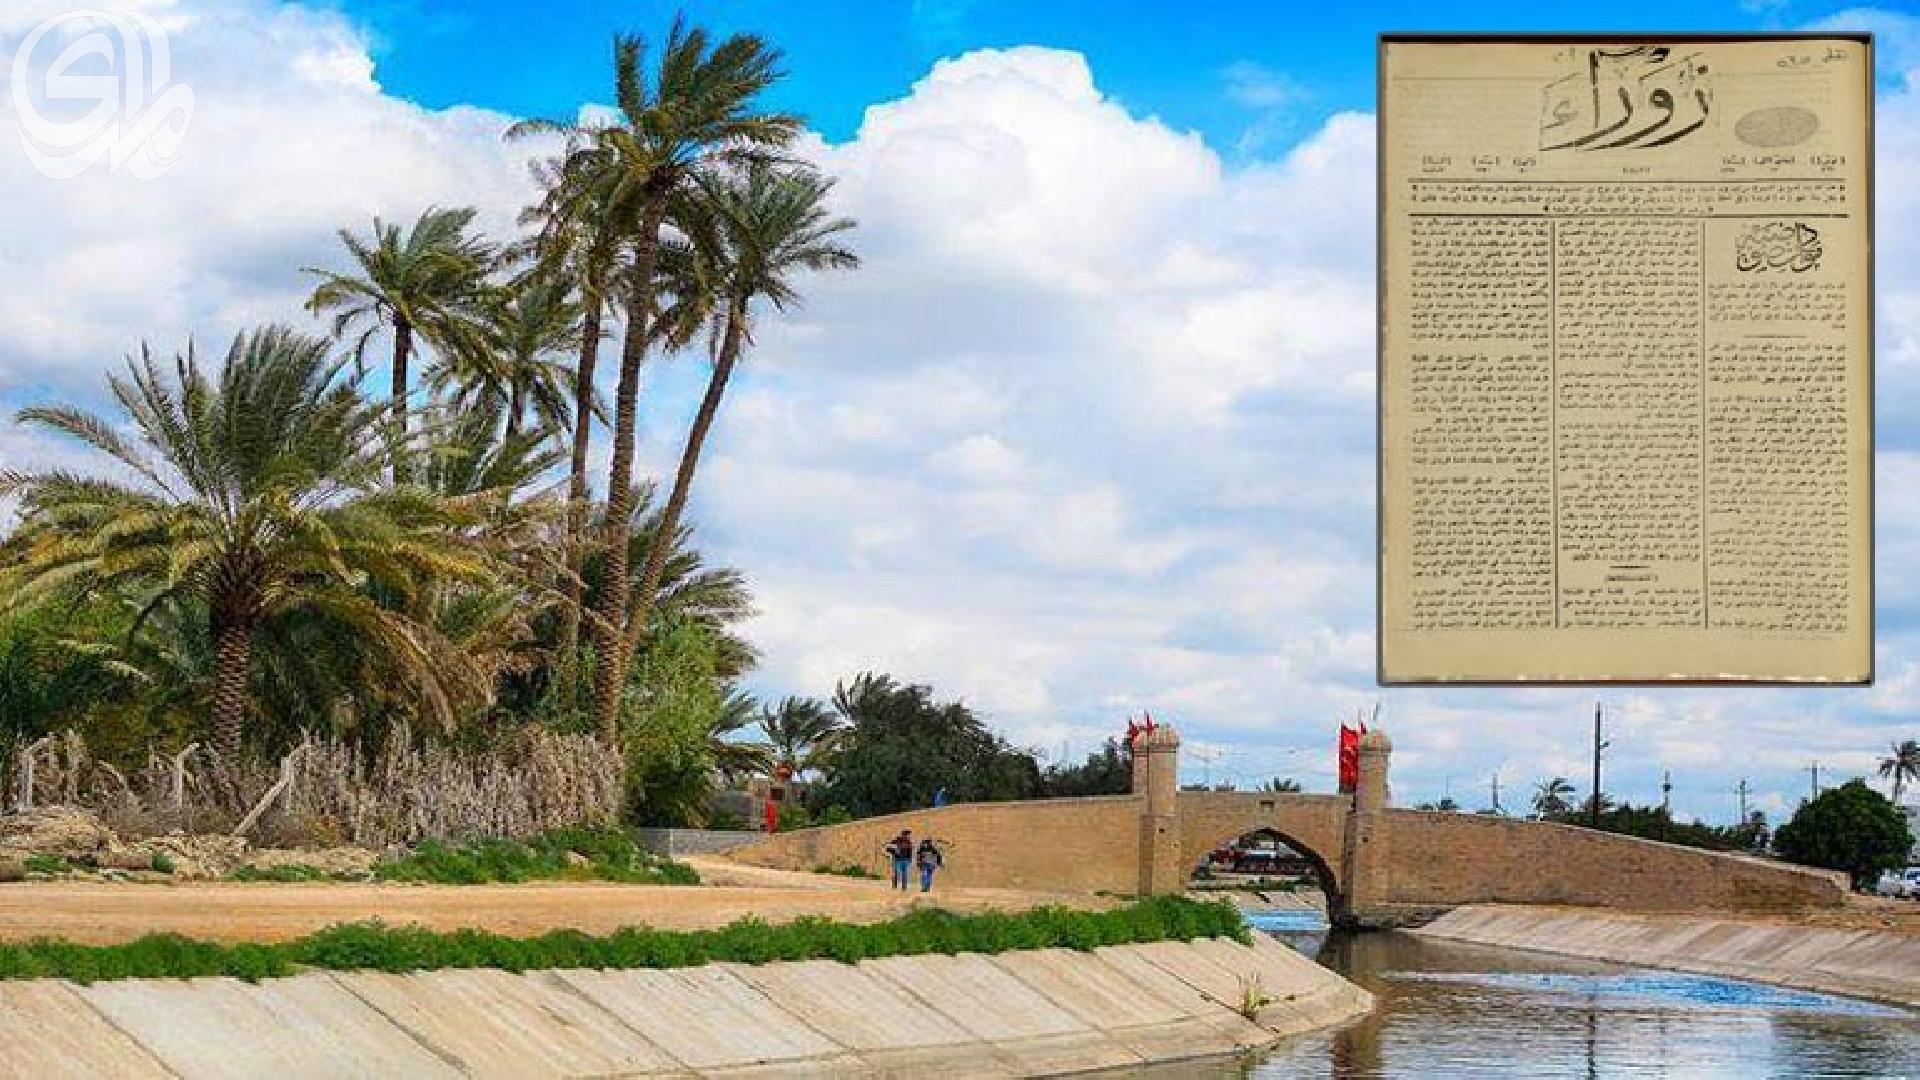 نهر الحسينية في كربلاء وفقاً لجريدة الزوراء سنة 1882م